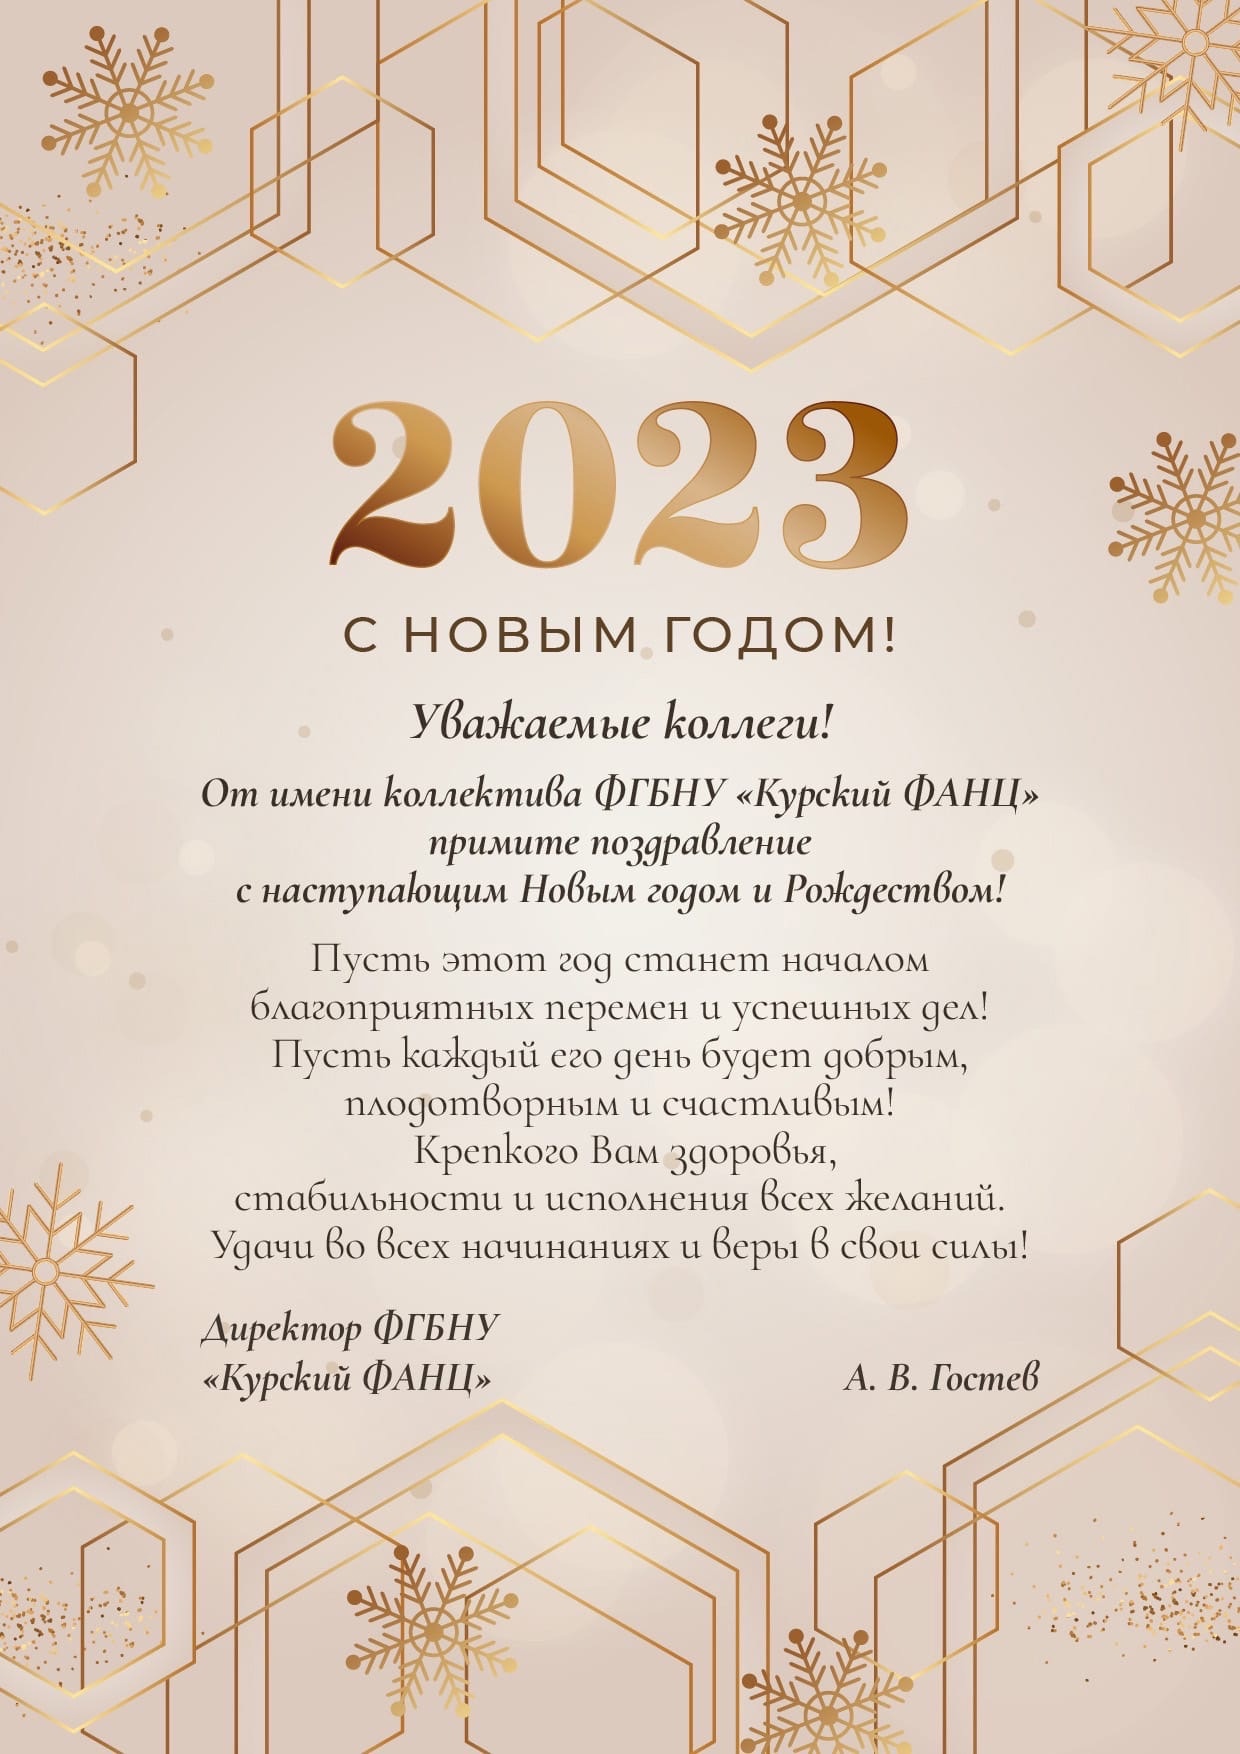 Поздравить 2023 годом. Поздравить с новым годом 2023. Новогодние поздравления на 2023 год. Поздравить коллектив с новым годом 2023. Открытка с новым годом коллективу 2023.